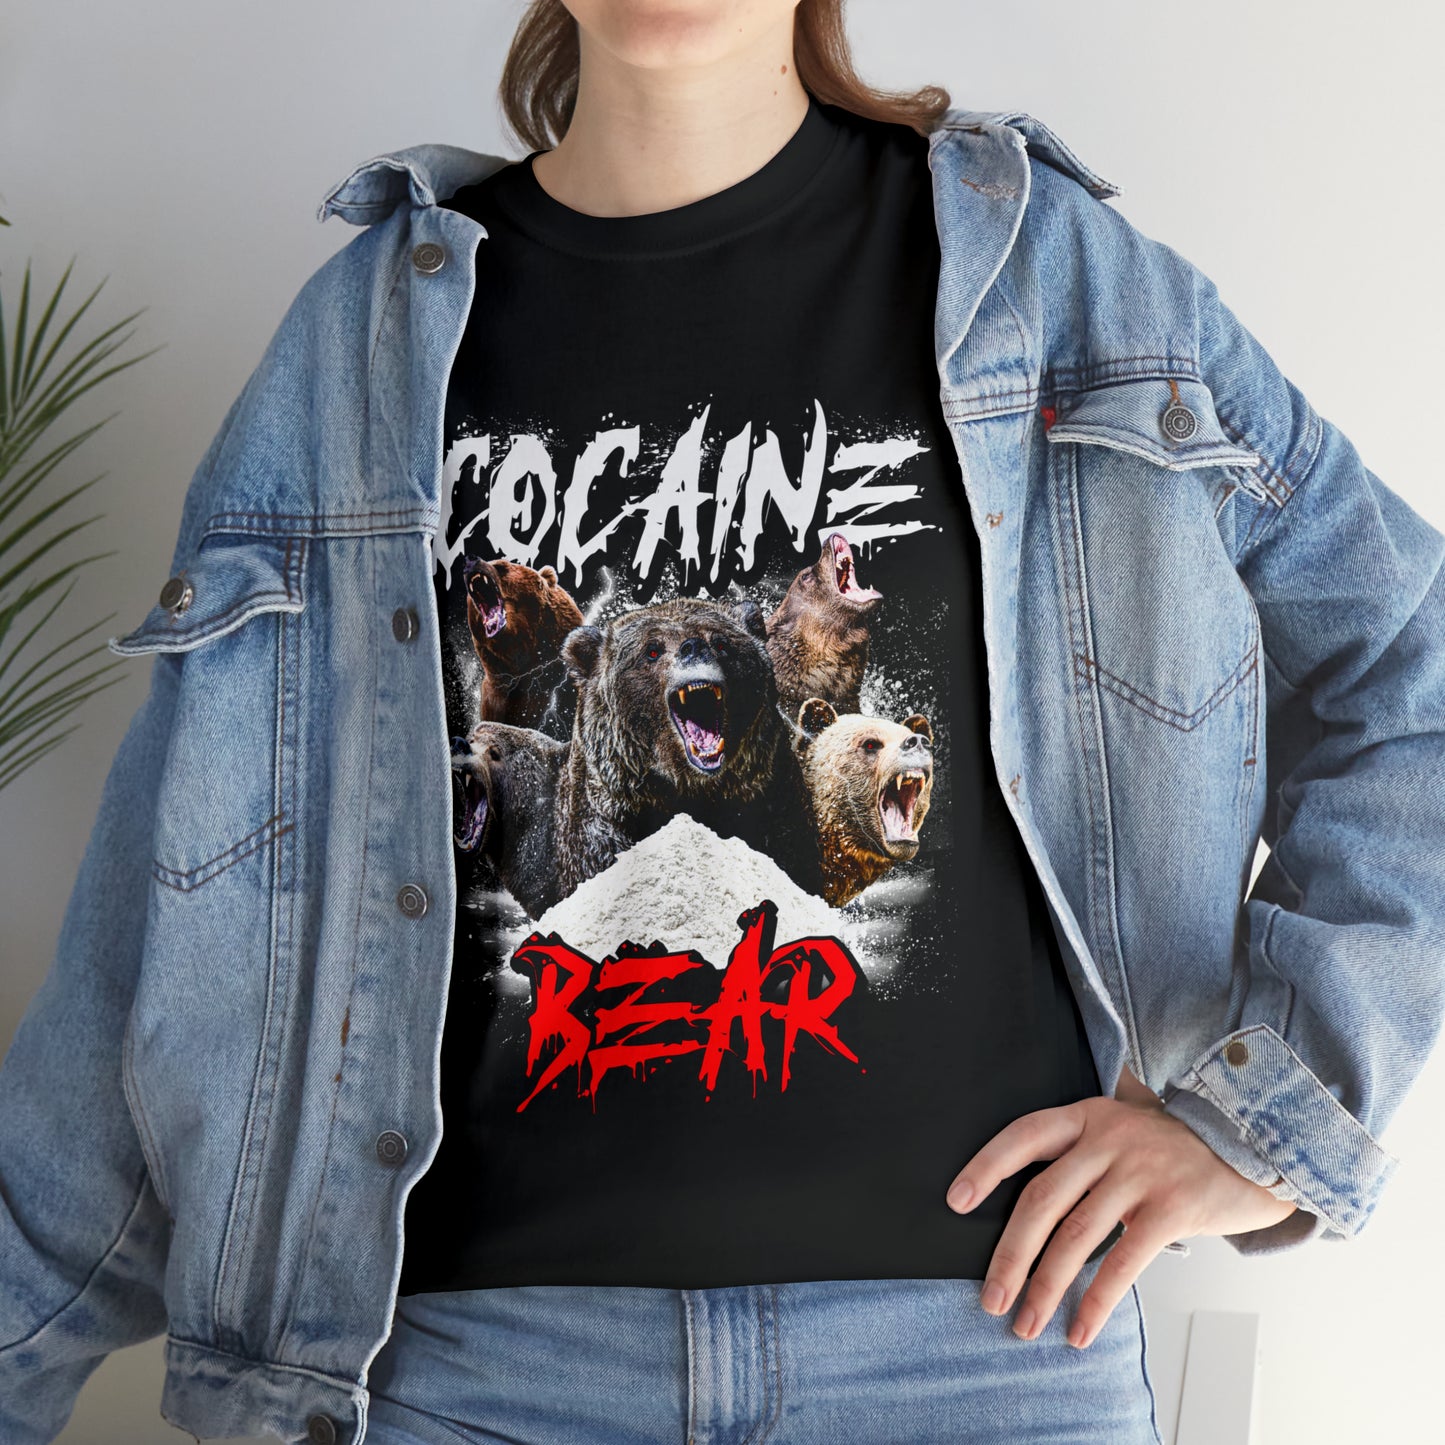 Cocaine Bear T-Shirt!